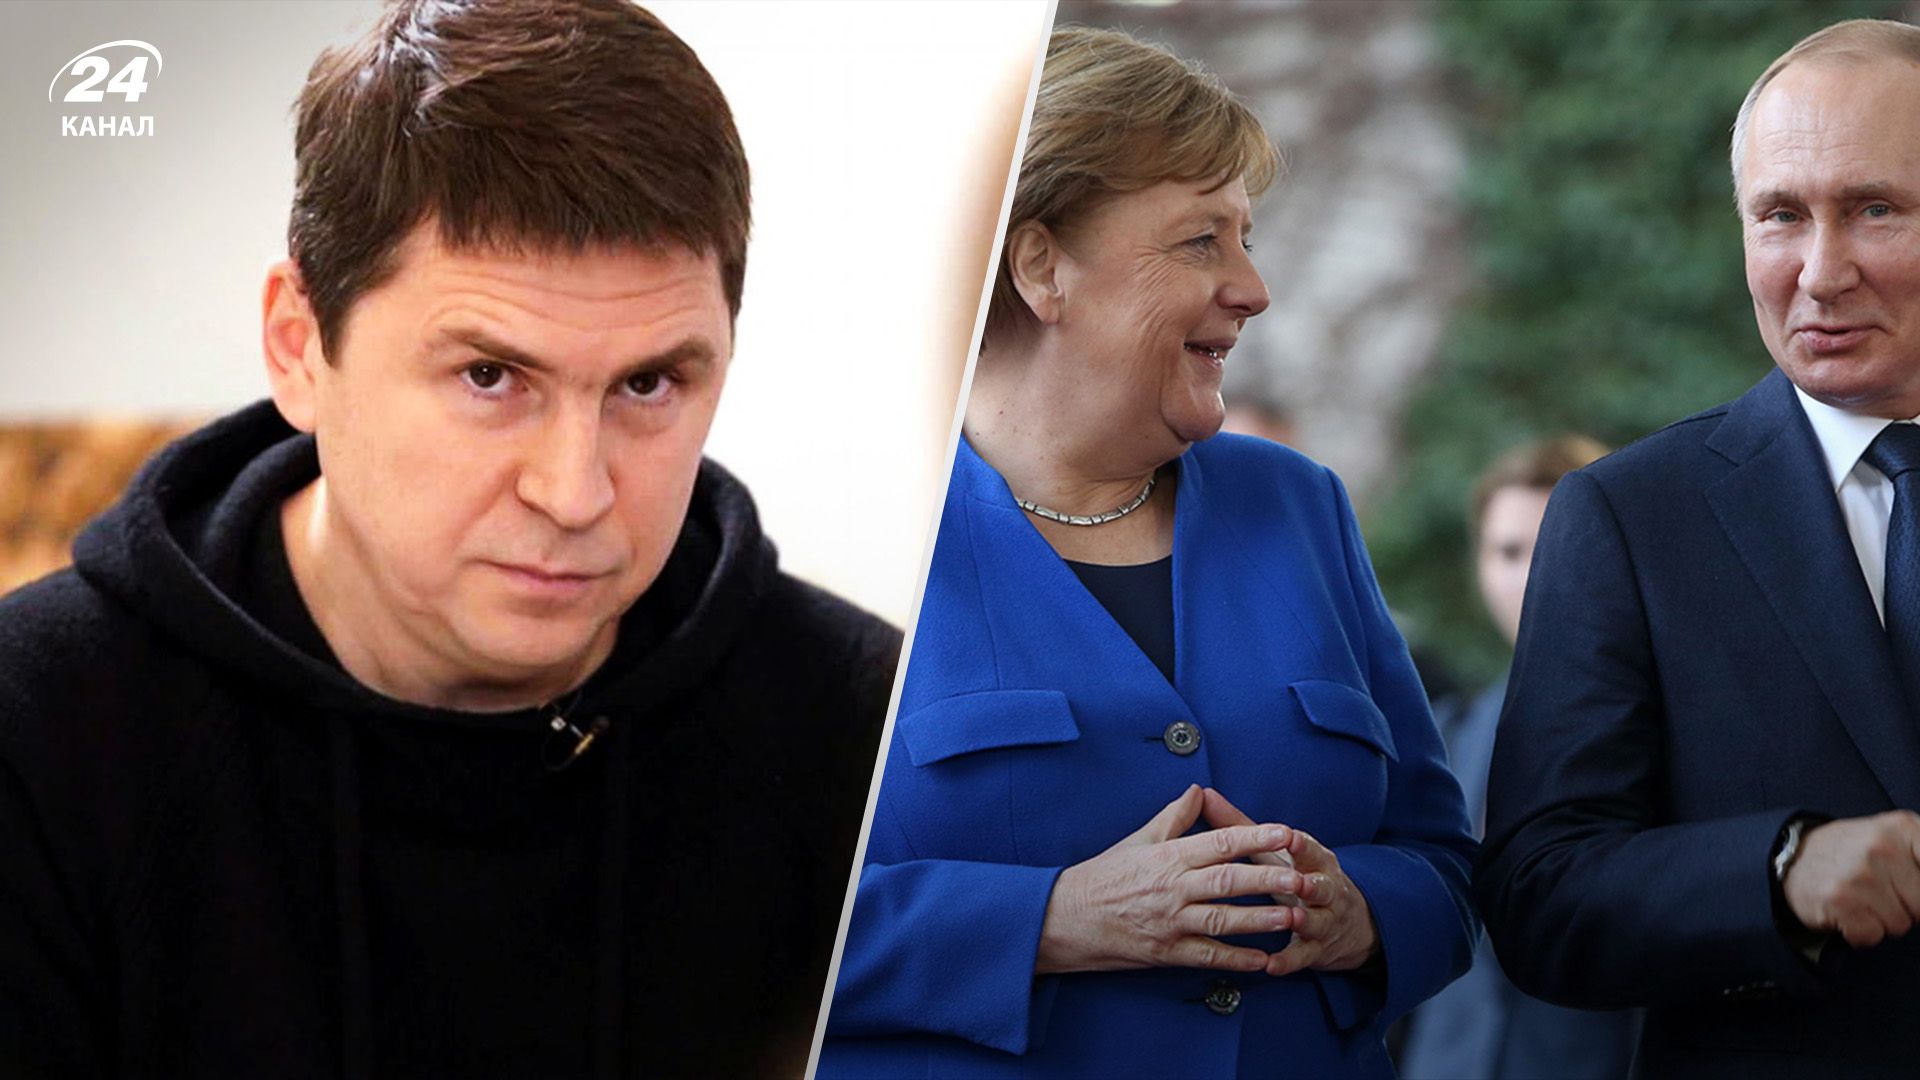 Припиніть виправдовуватися, – Подоляк жорстко розкритикував Меркель за політику щодо Росії - 24 Канал